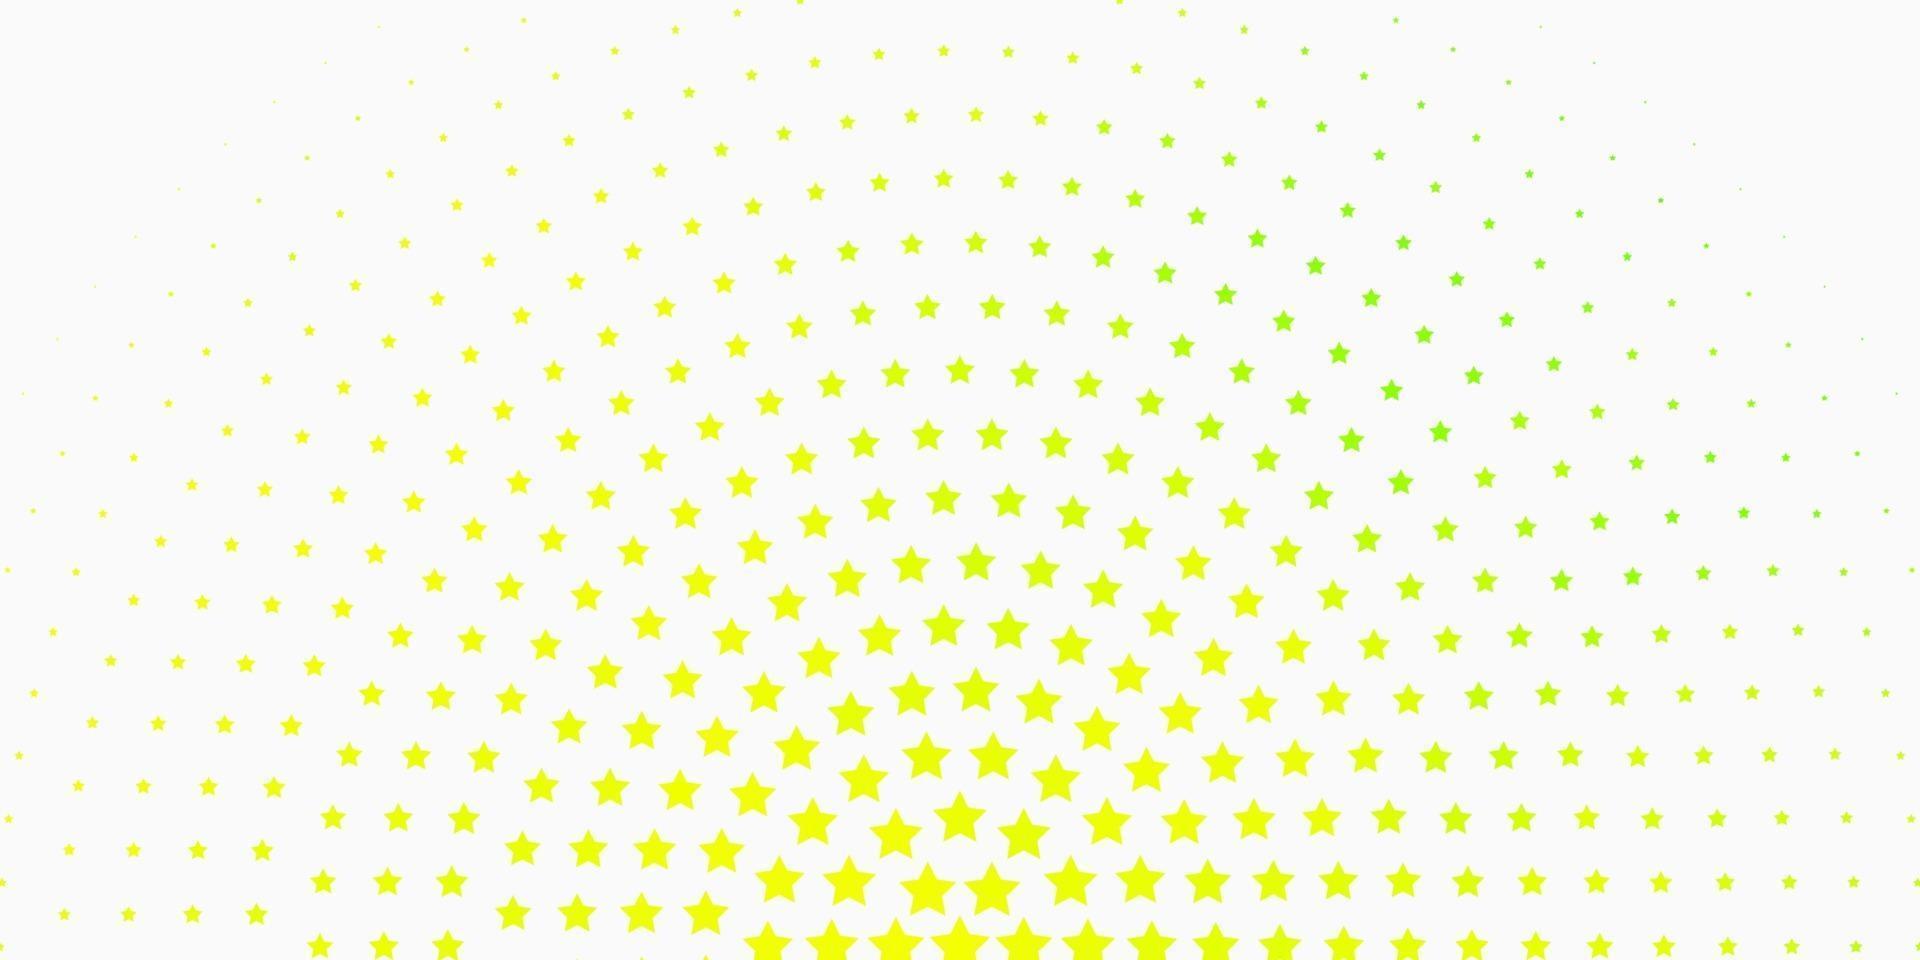 ljusgrönt, gult vektormönster med abstrakta stjärnor. vektor